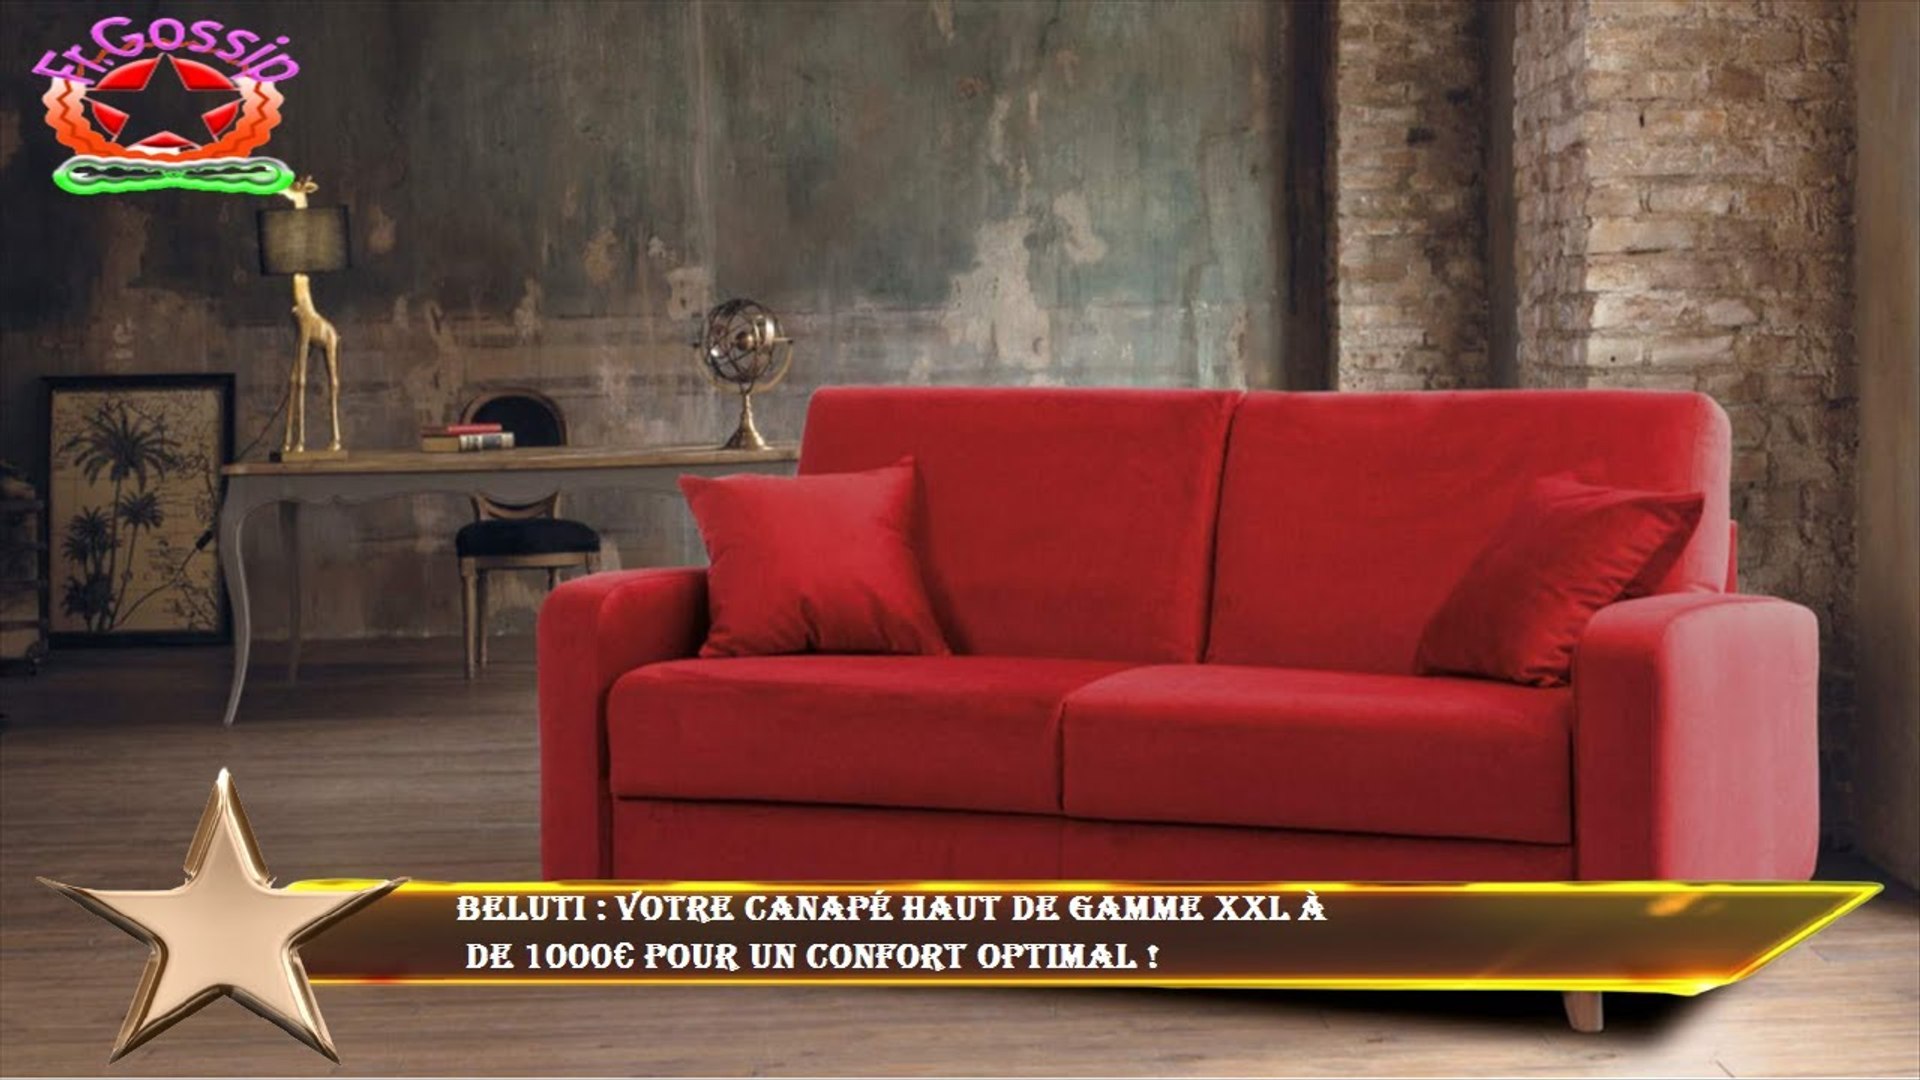 Beluti : votre canapé haut de gamme XXL à de 1000€ pour un confort optimal  ! - Vidéo Dailymotion